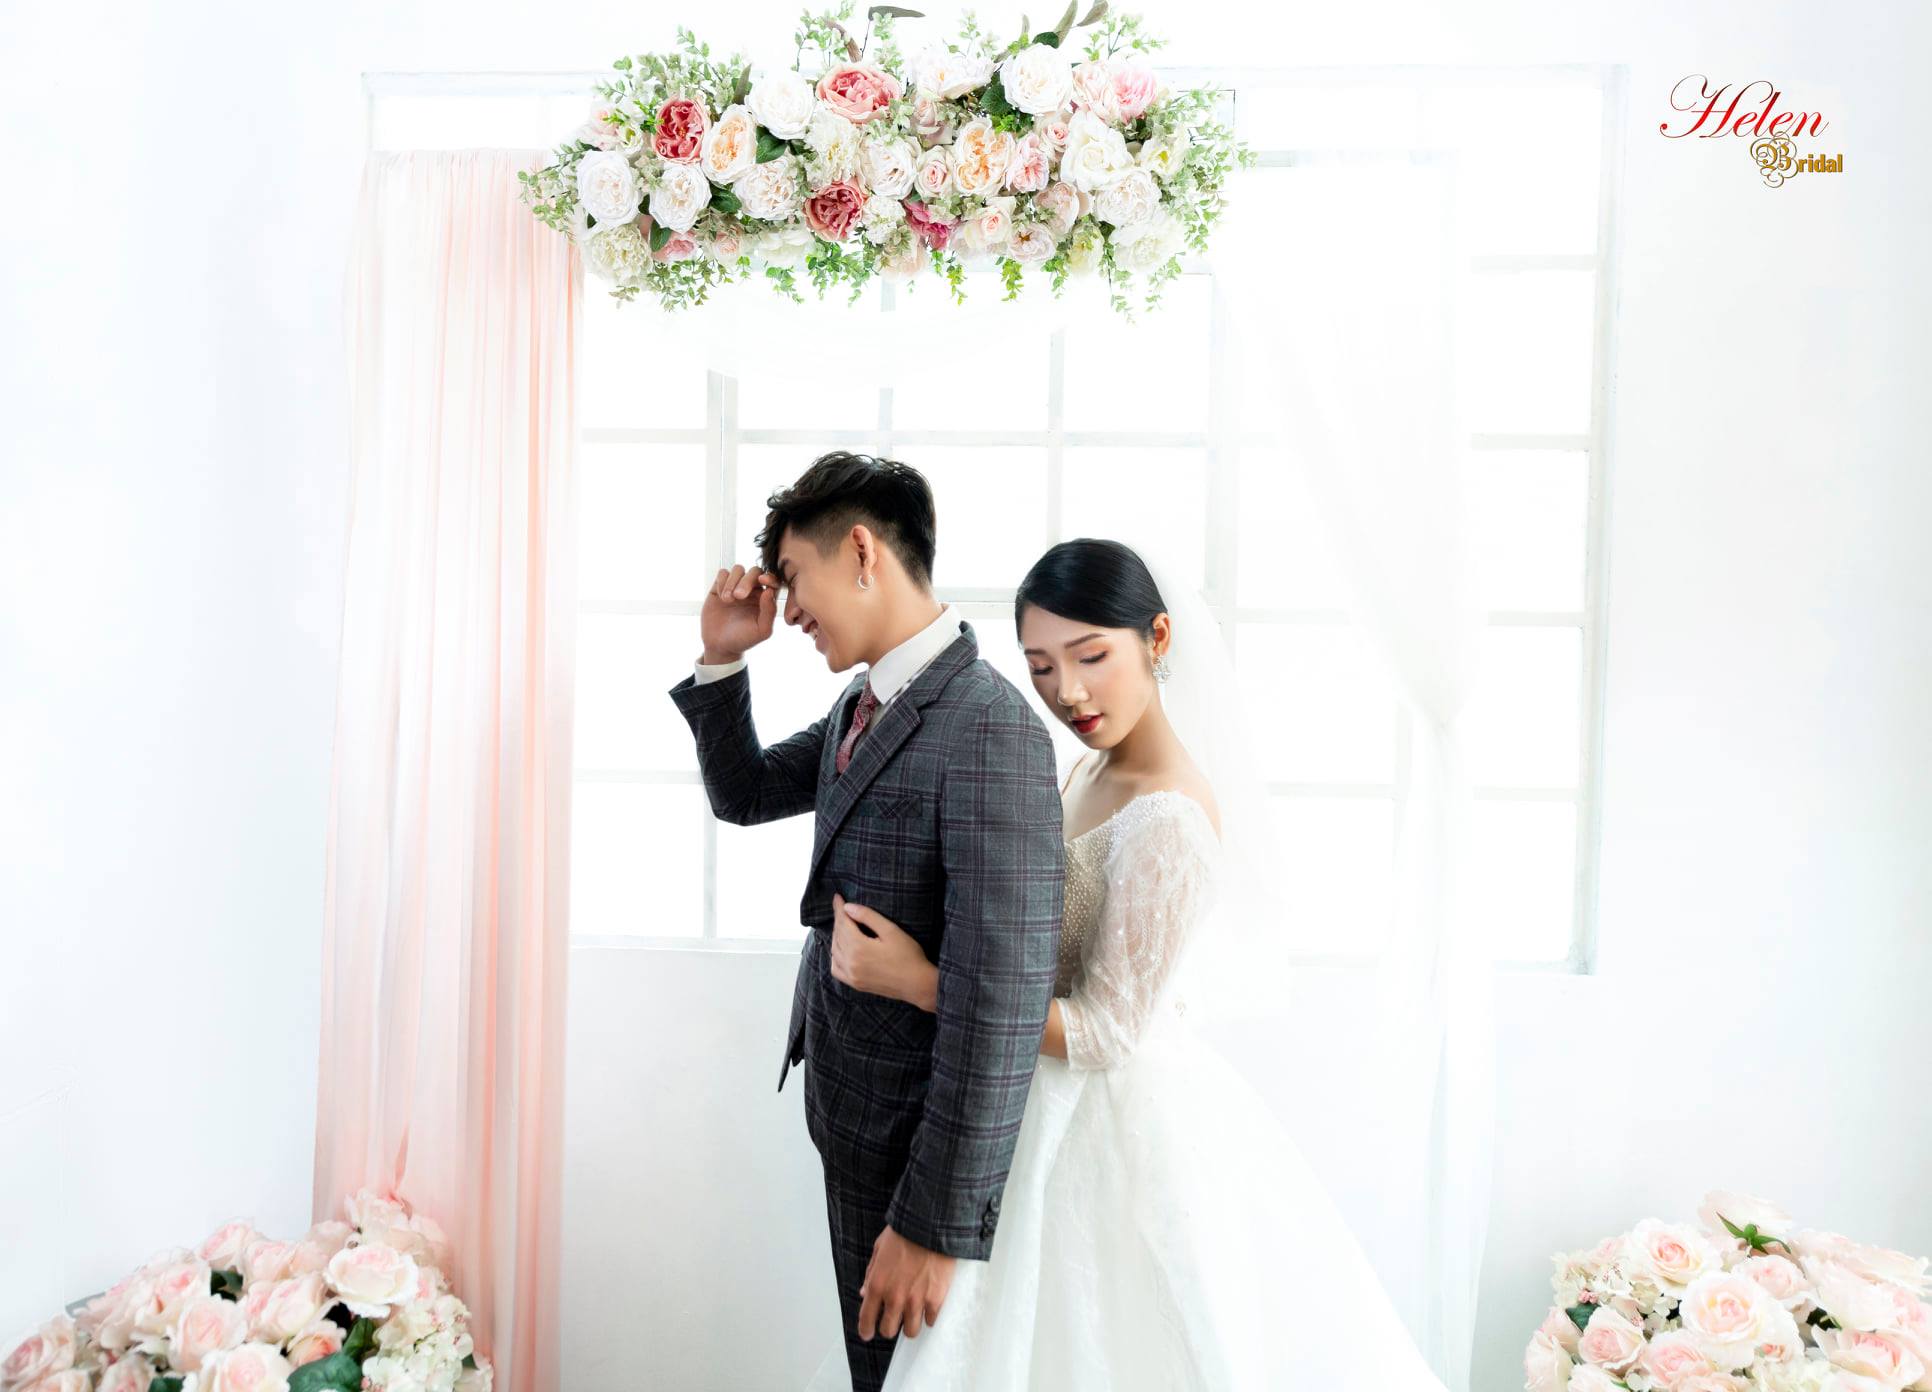 Studio chụp ảnh cưới Hàn Quốc: Hàn Quốc luôn là thương hiệu nổi tiếng về việc chụp ảnh cưới. Với studio chụp ảnh cưới Hàn Quốc, bạn sẽ trải nghiệm sự chuyên nghiệp và những bức ảnh đẹp như mơ, tạo nên sự khác biệt và sang trọng cho ngày cưới của mình.